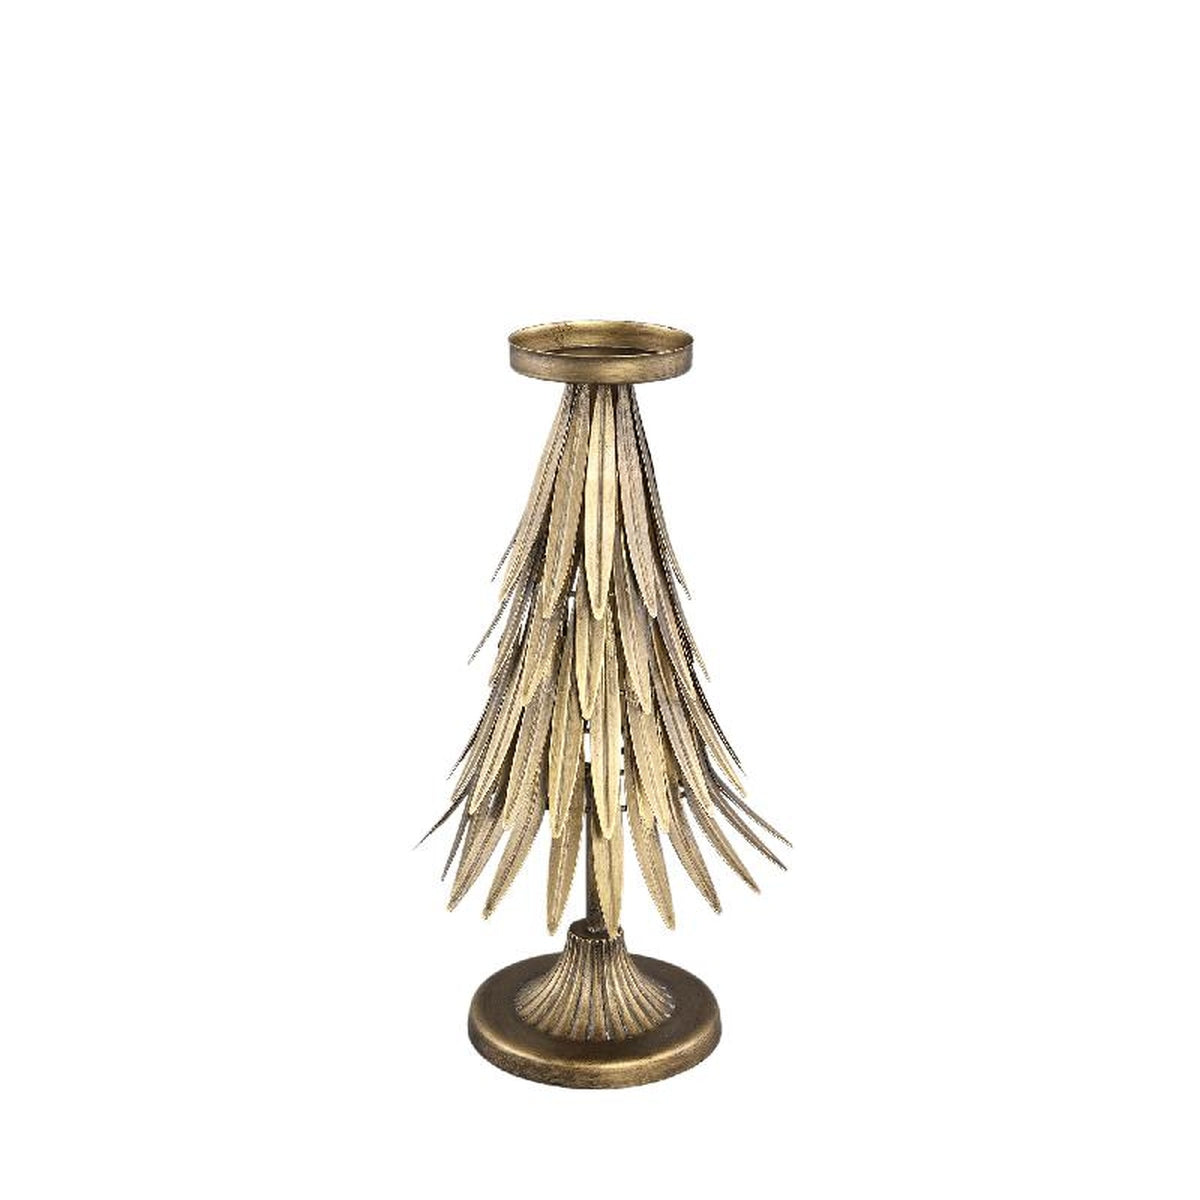 Ptmd objet décoratif wellz - 21x21x37 cm - métal - l'or